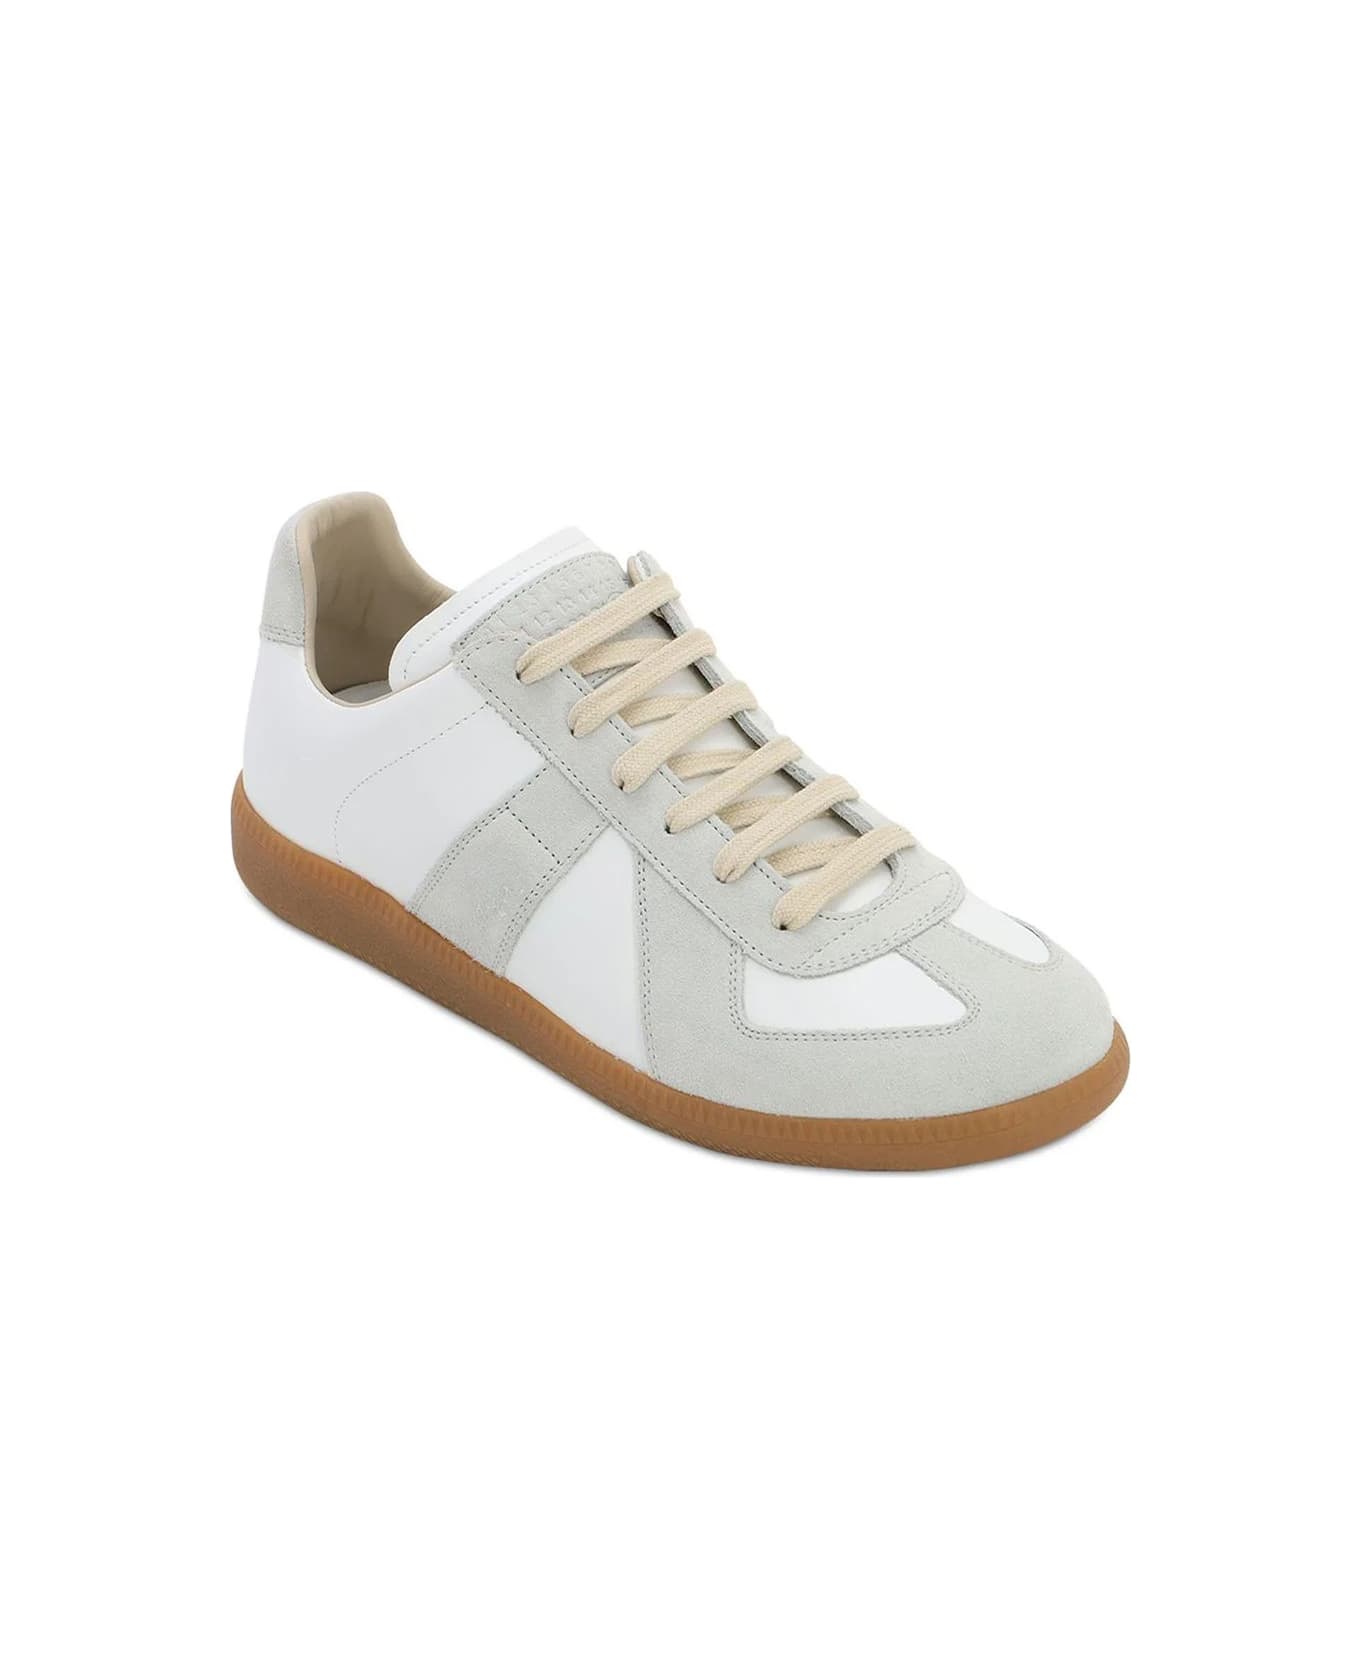 Maison Margiela Sneakers - WHITE